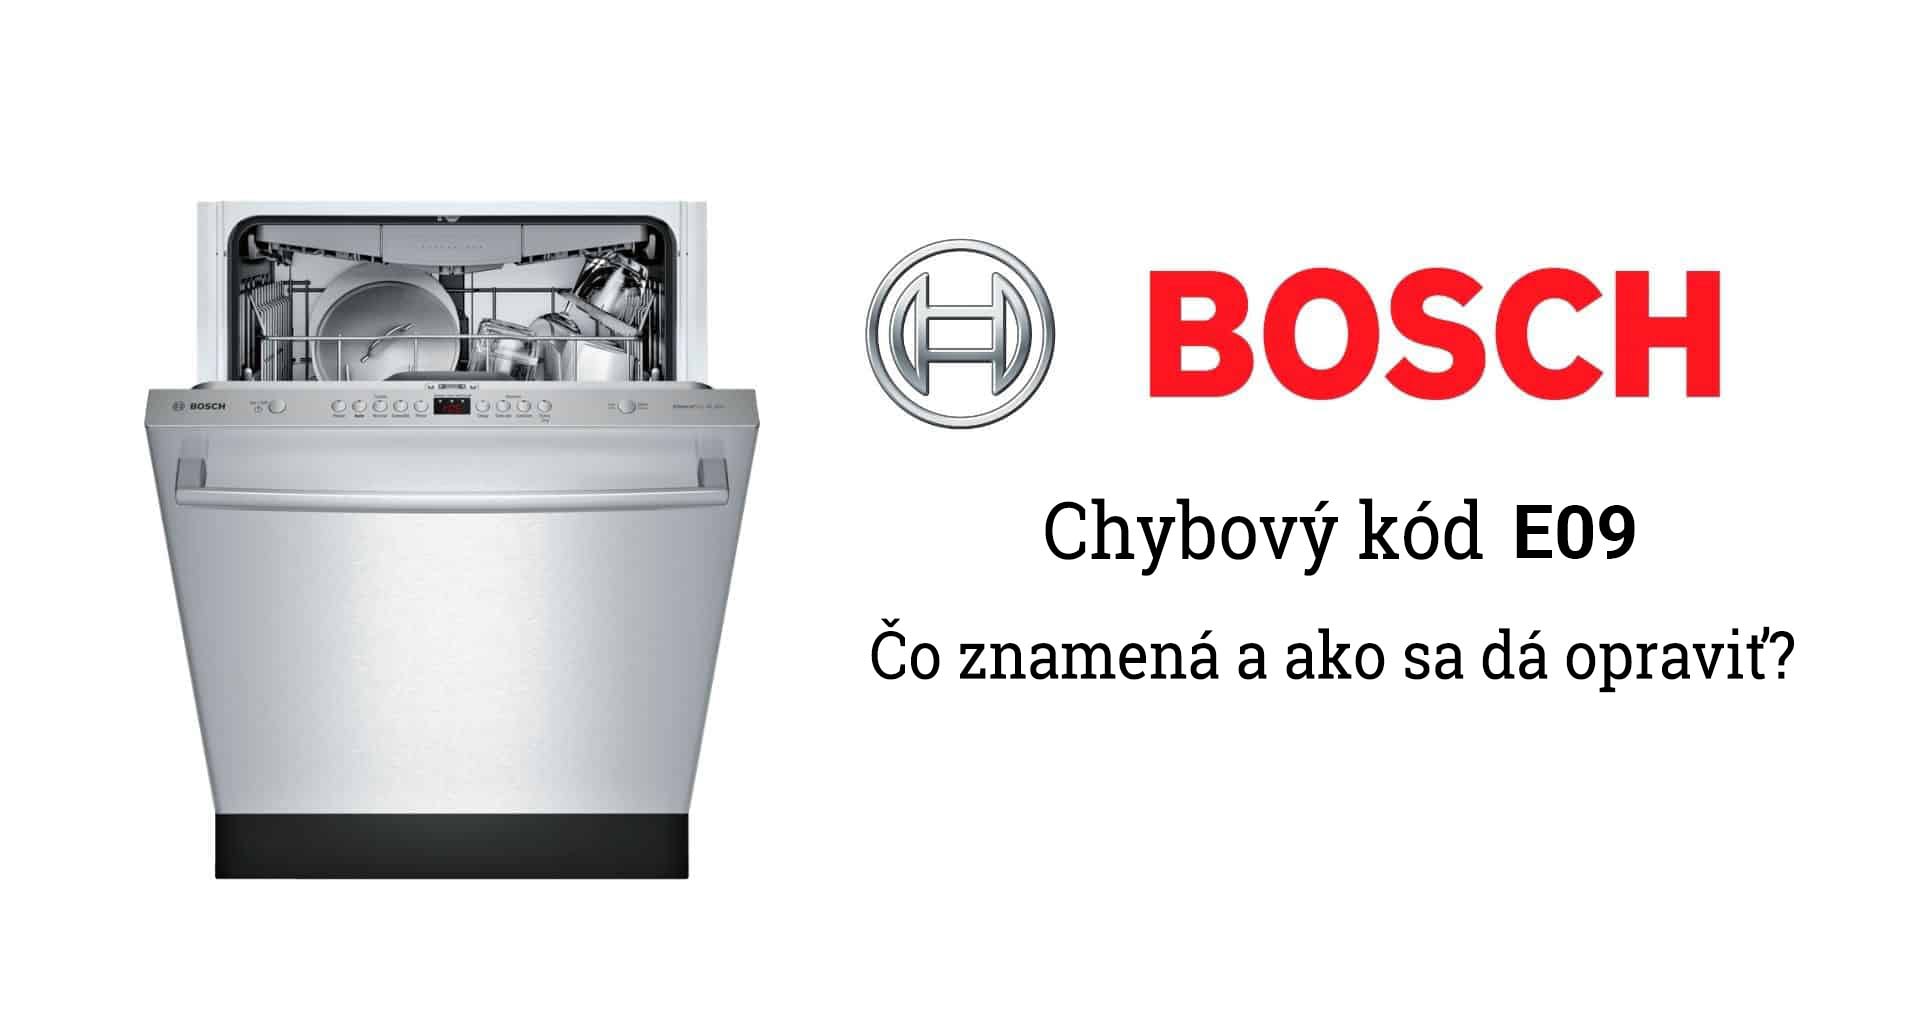 Poruchy umývačky Bosch - chybový kód E09